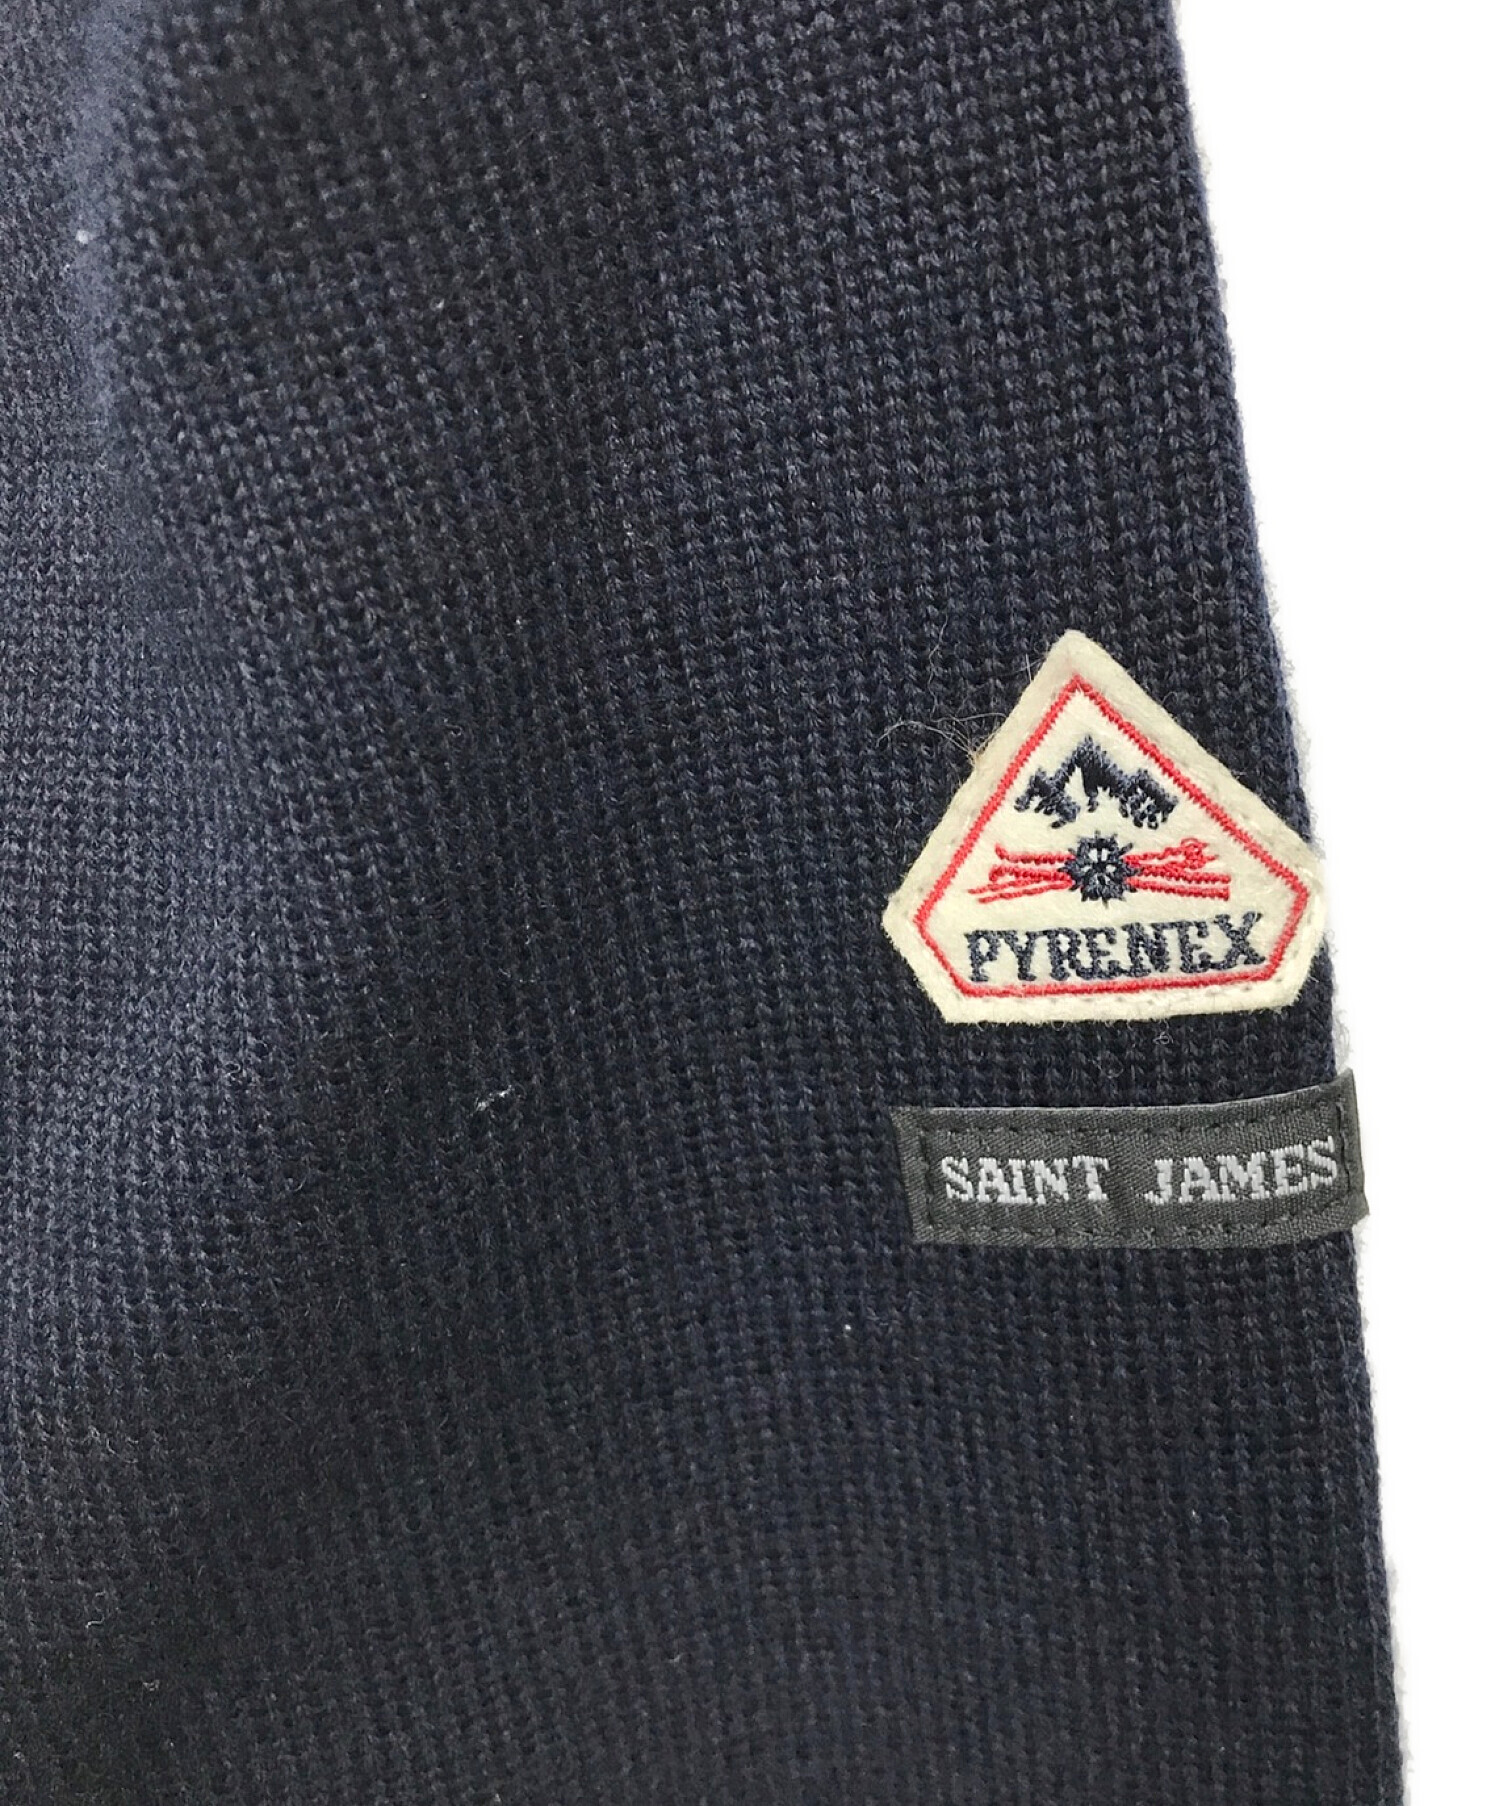 saint james×pyrenex コラボ 肩ボタン ニット - ブランド別